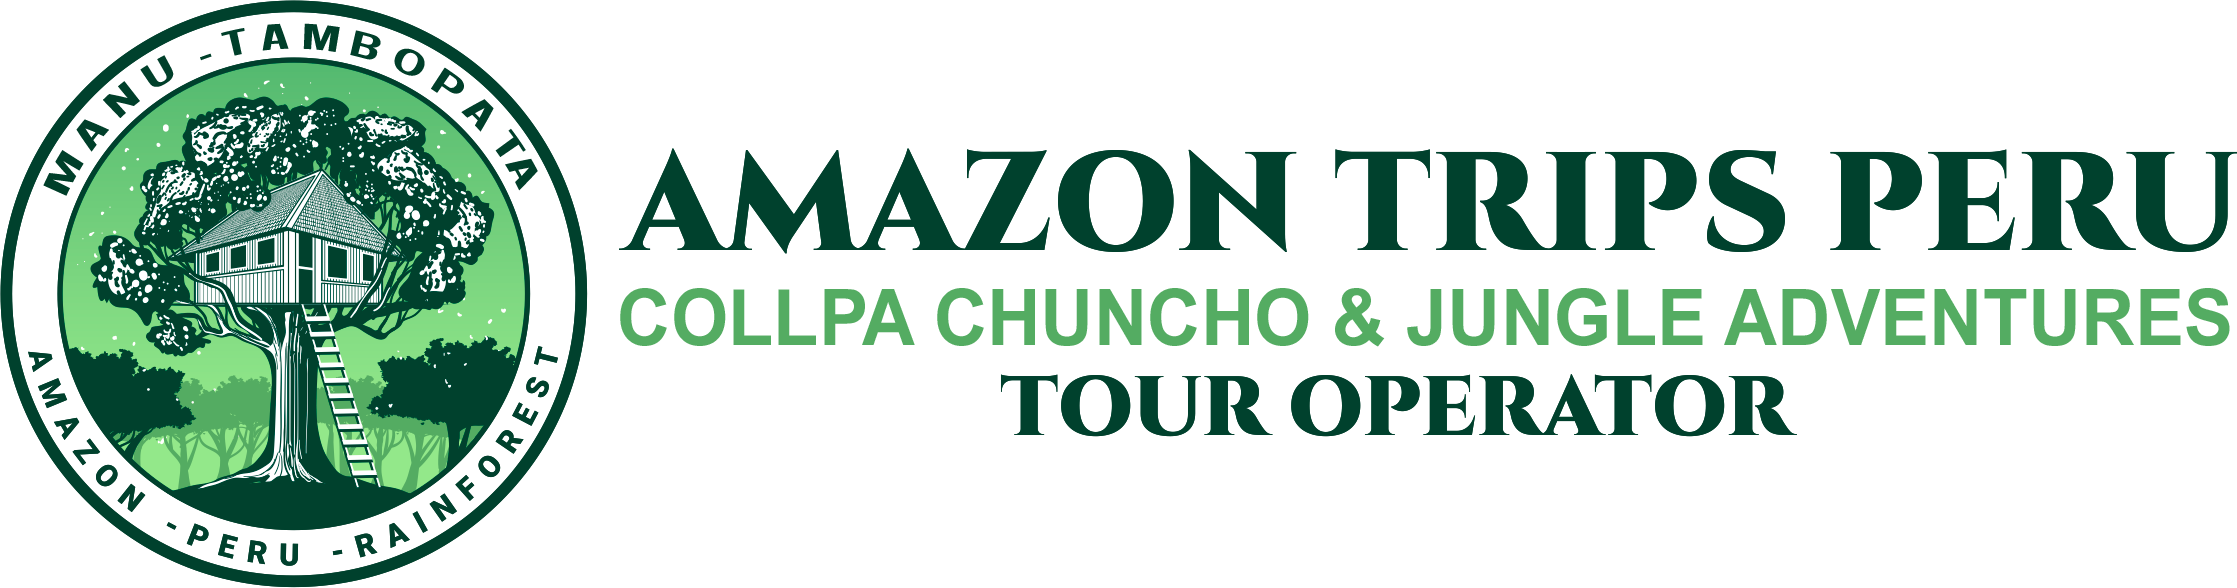 Amazon Trip Peru